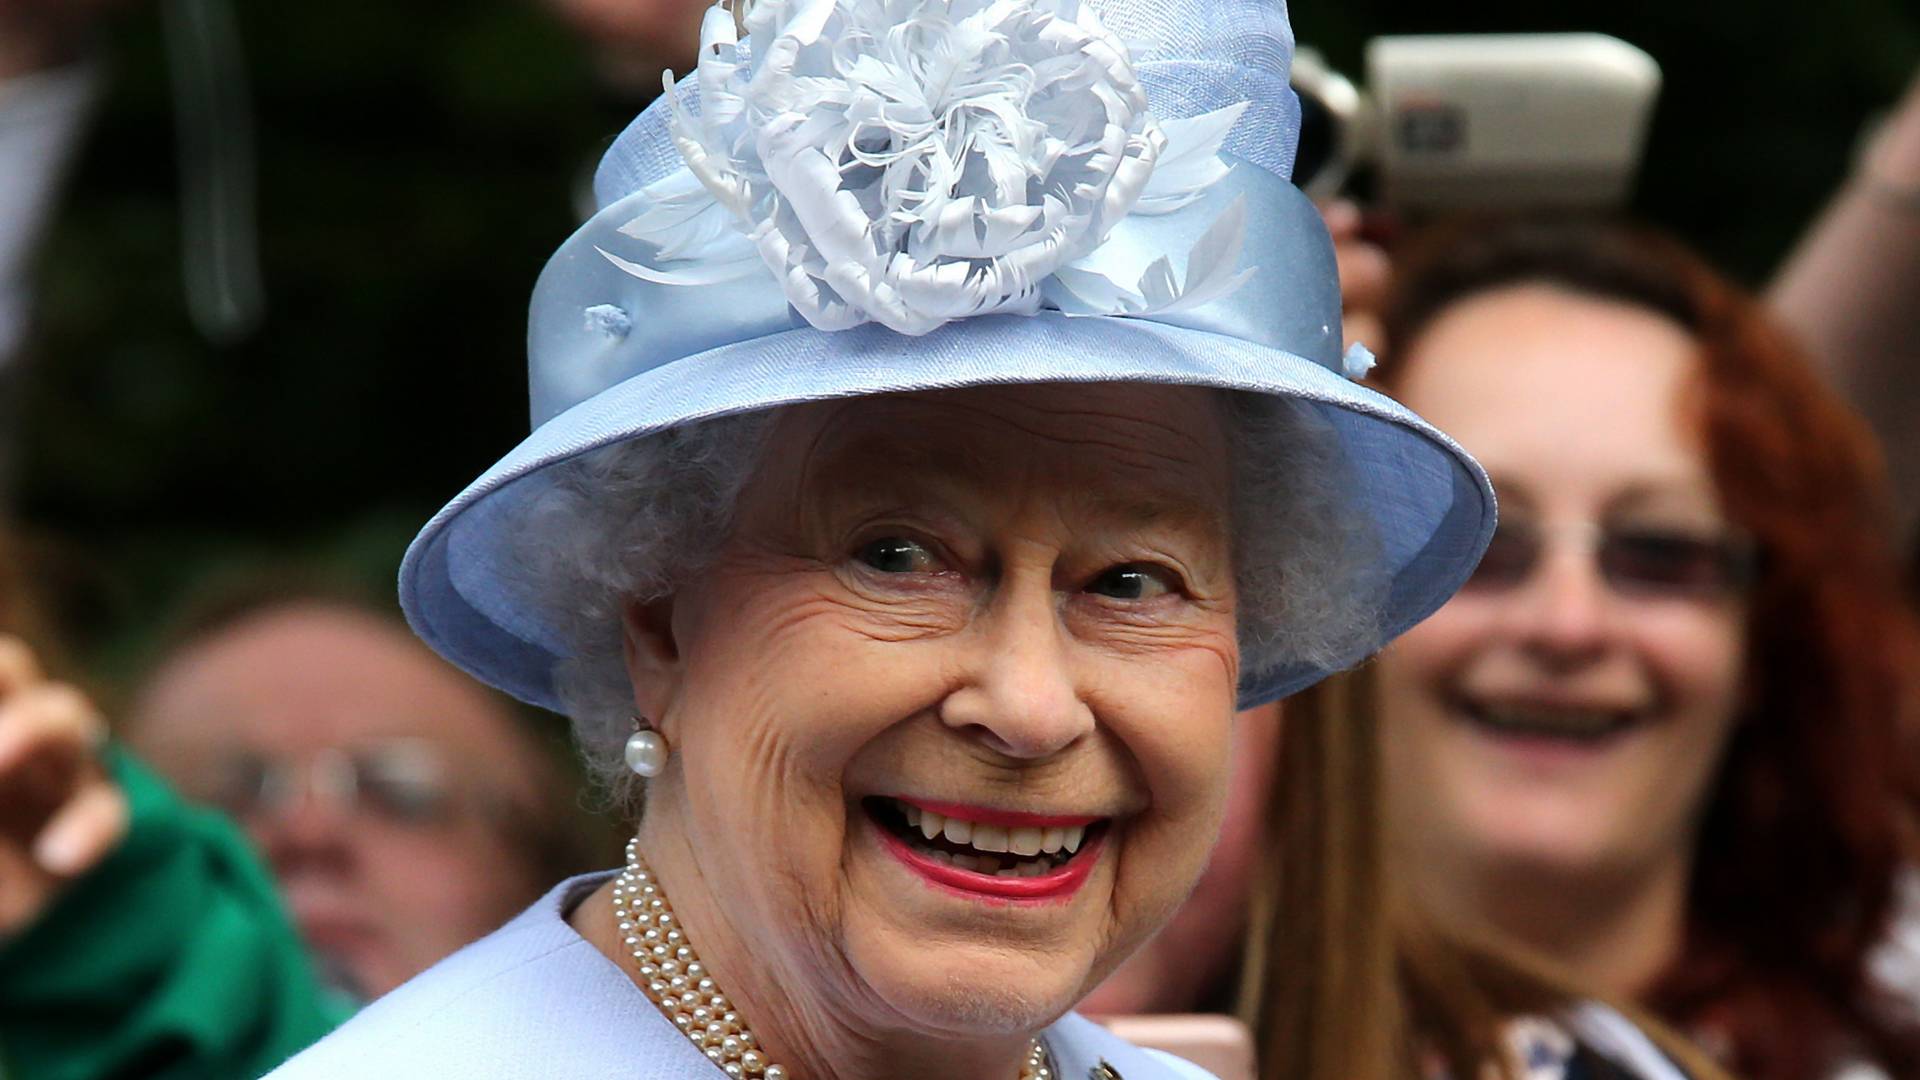 Először fotózták le Erzsébet királynőt a Meghan interjú óta - rá sem lehet ismerni